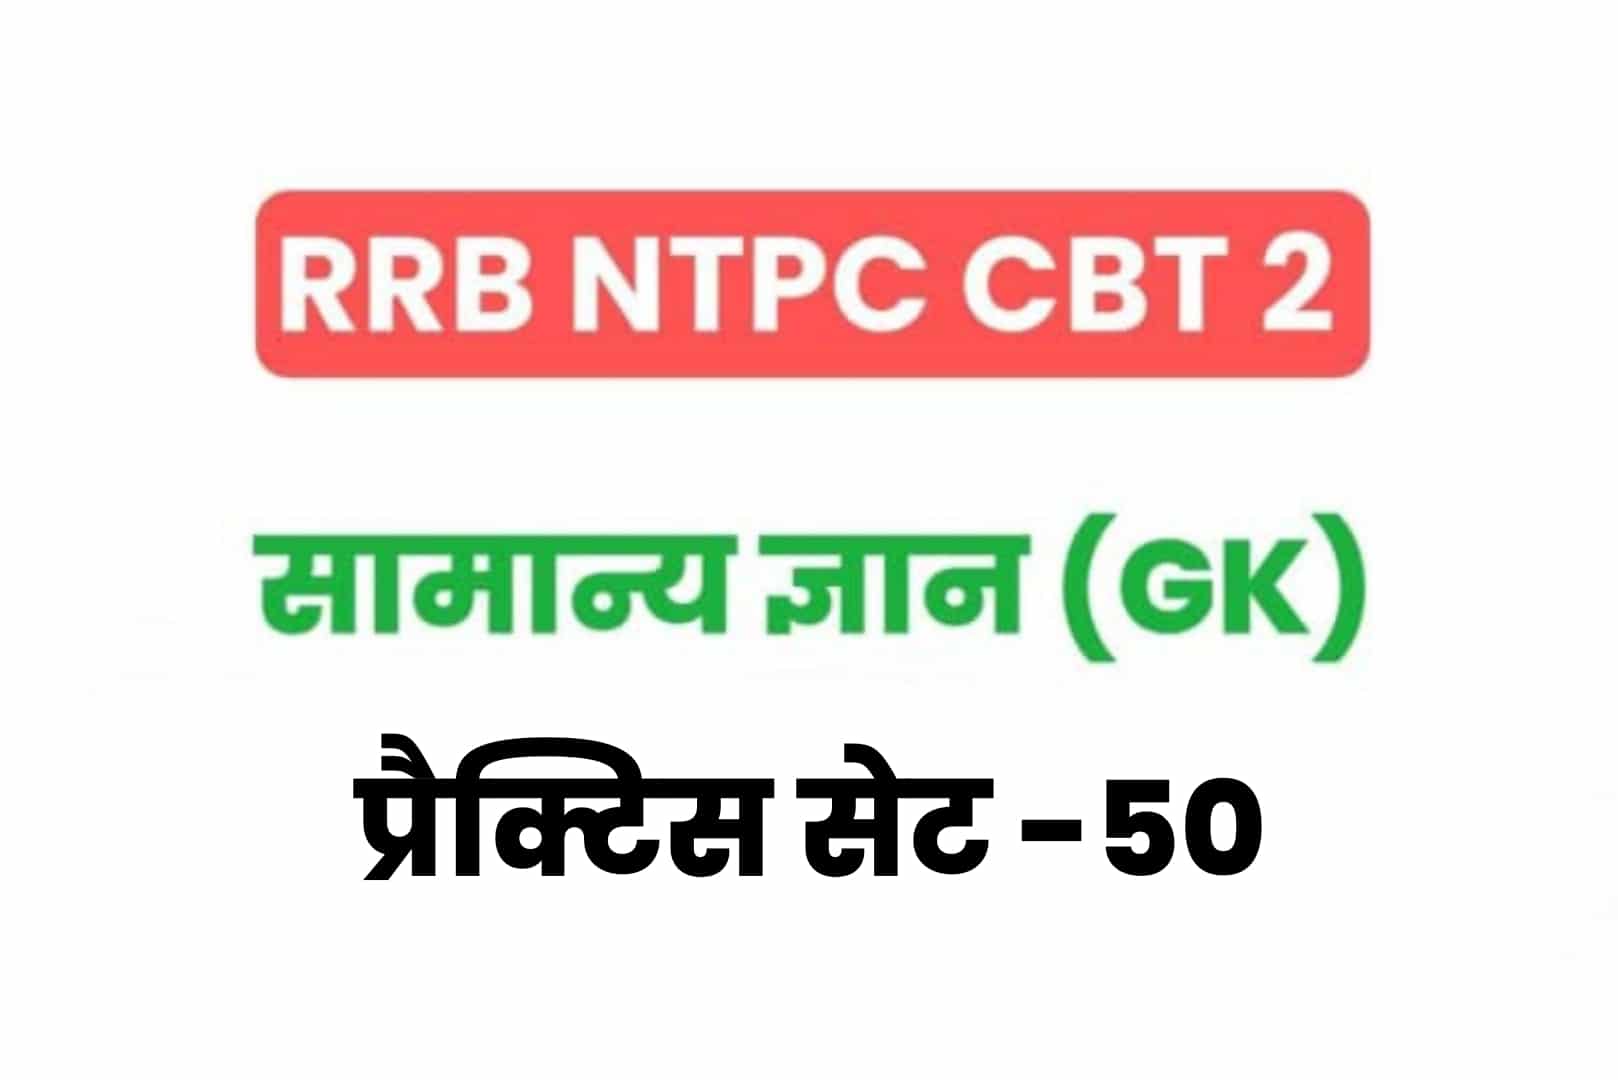 RRB NTPC CBT 2 GK प्रैक्टिस सेट 50: सामान्य ज्ञान के 25 बेहद महत्वपूर्ण प्रश्नों का अवश्य करें अध्ययन